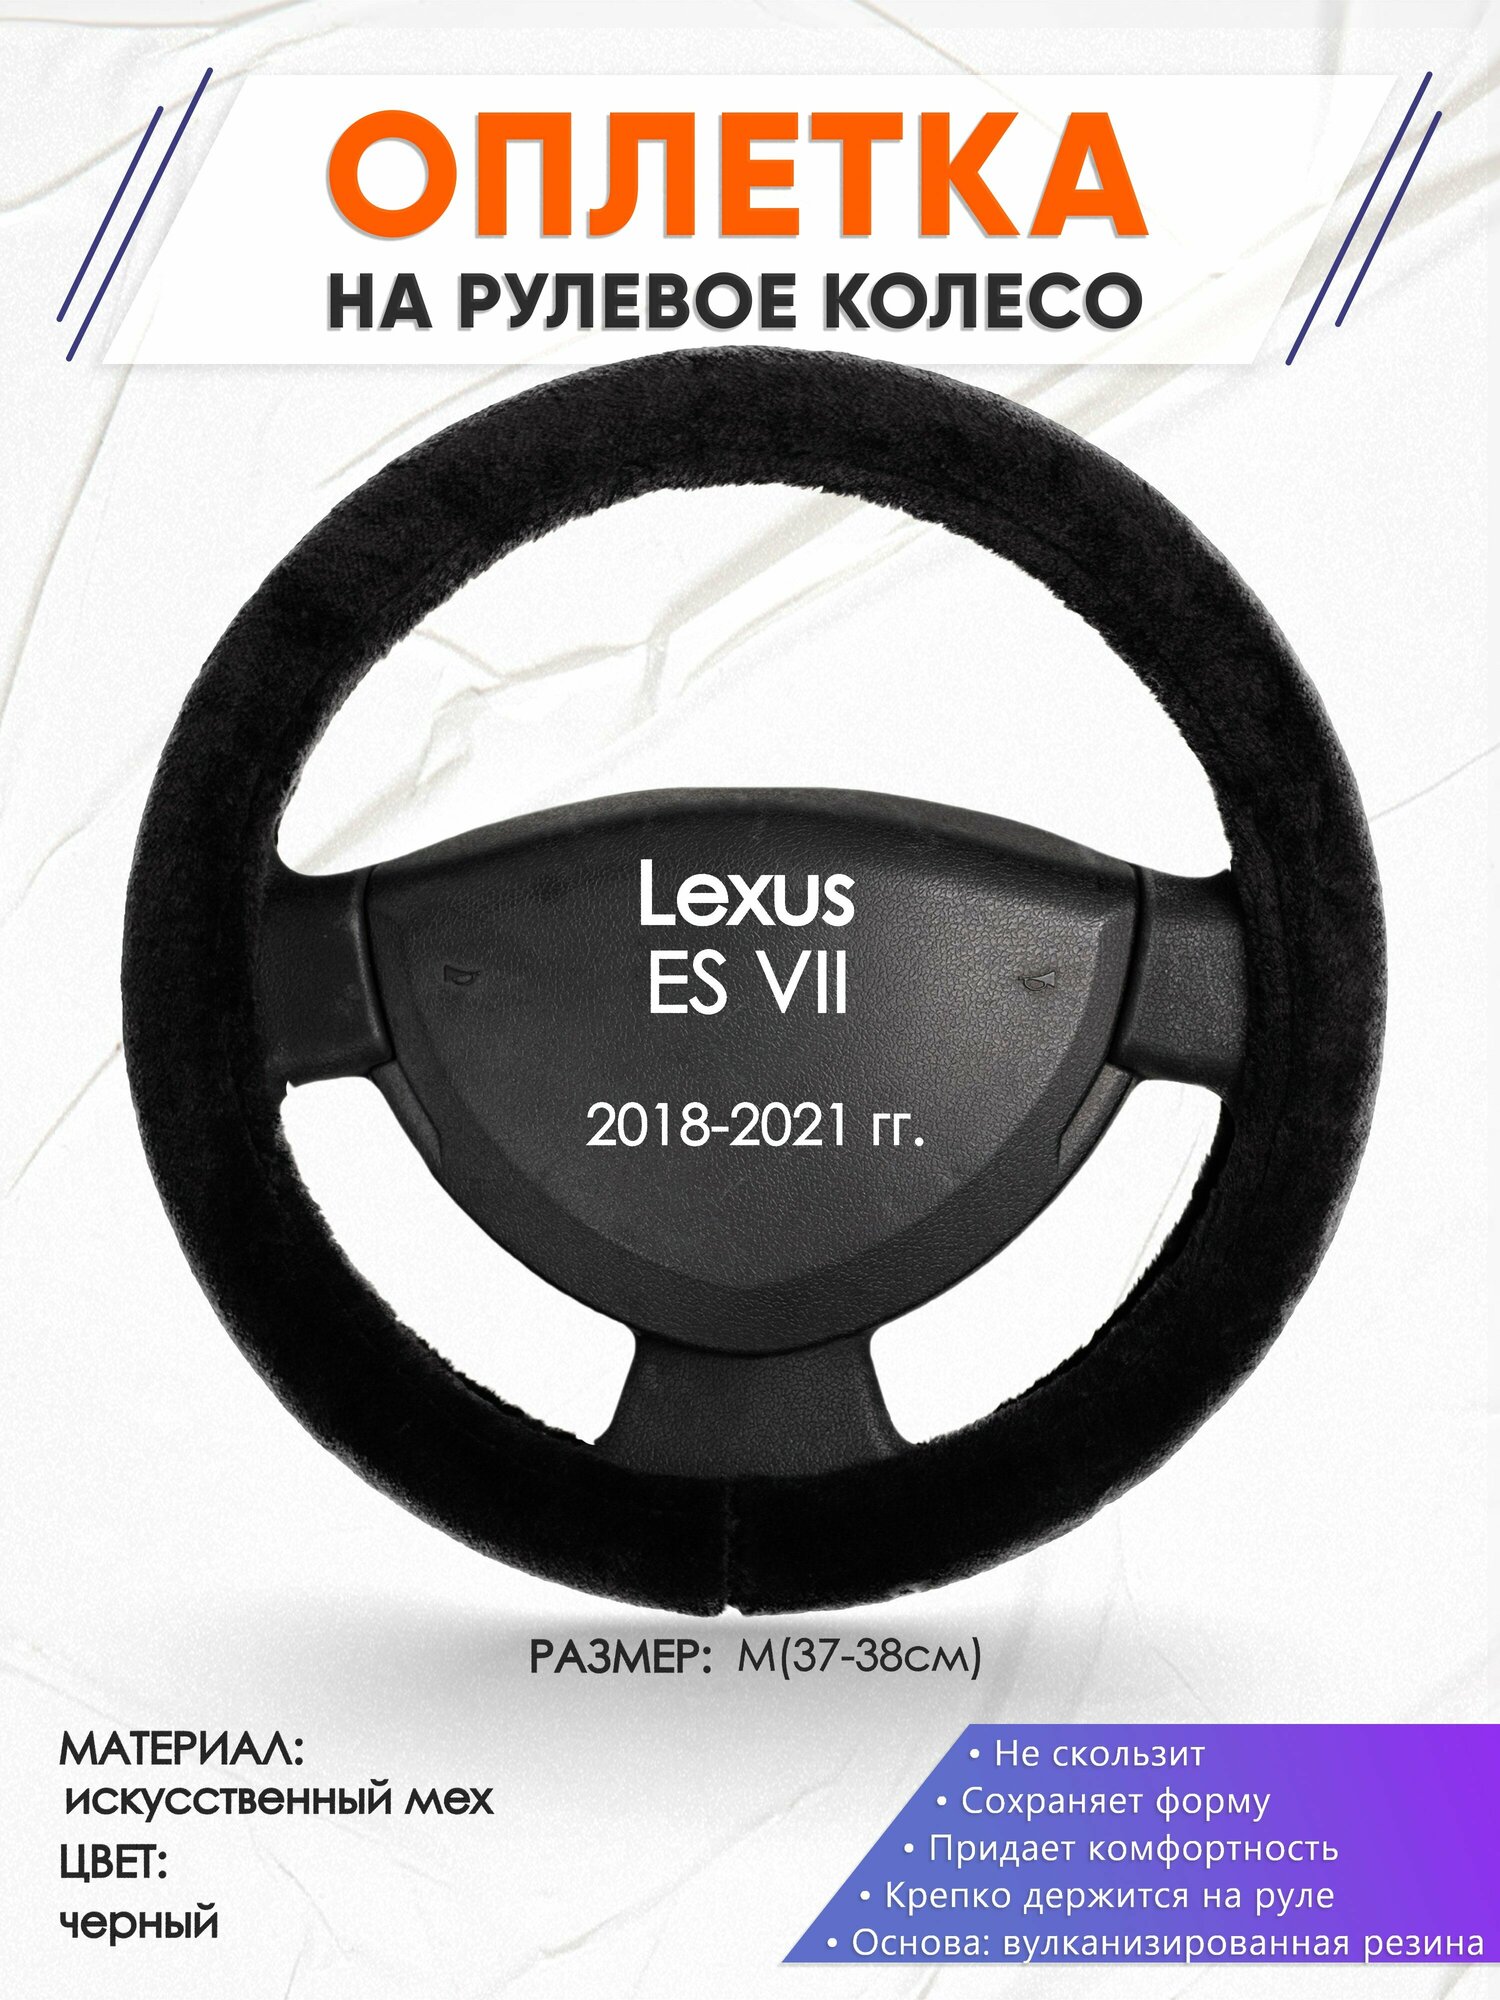 Оплетка наруль для Lexus ES 7(Лексус ЕС 7) 2018-2021 годов выпуска, размер M(37-38см), Искусственный мех 45